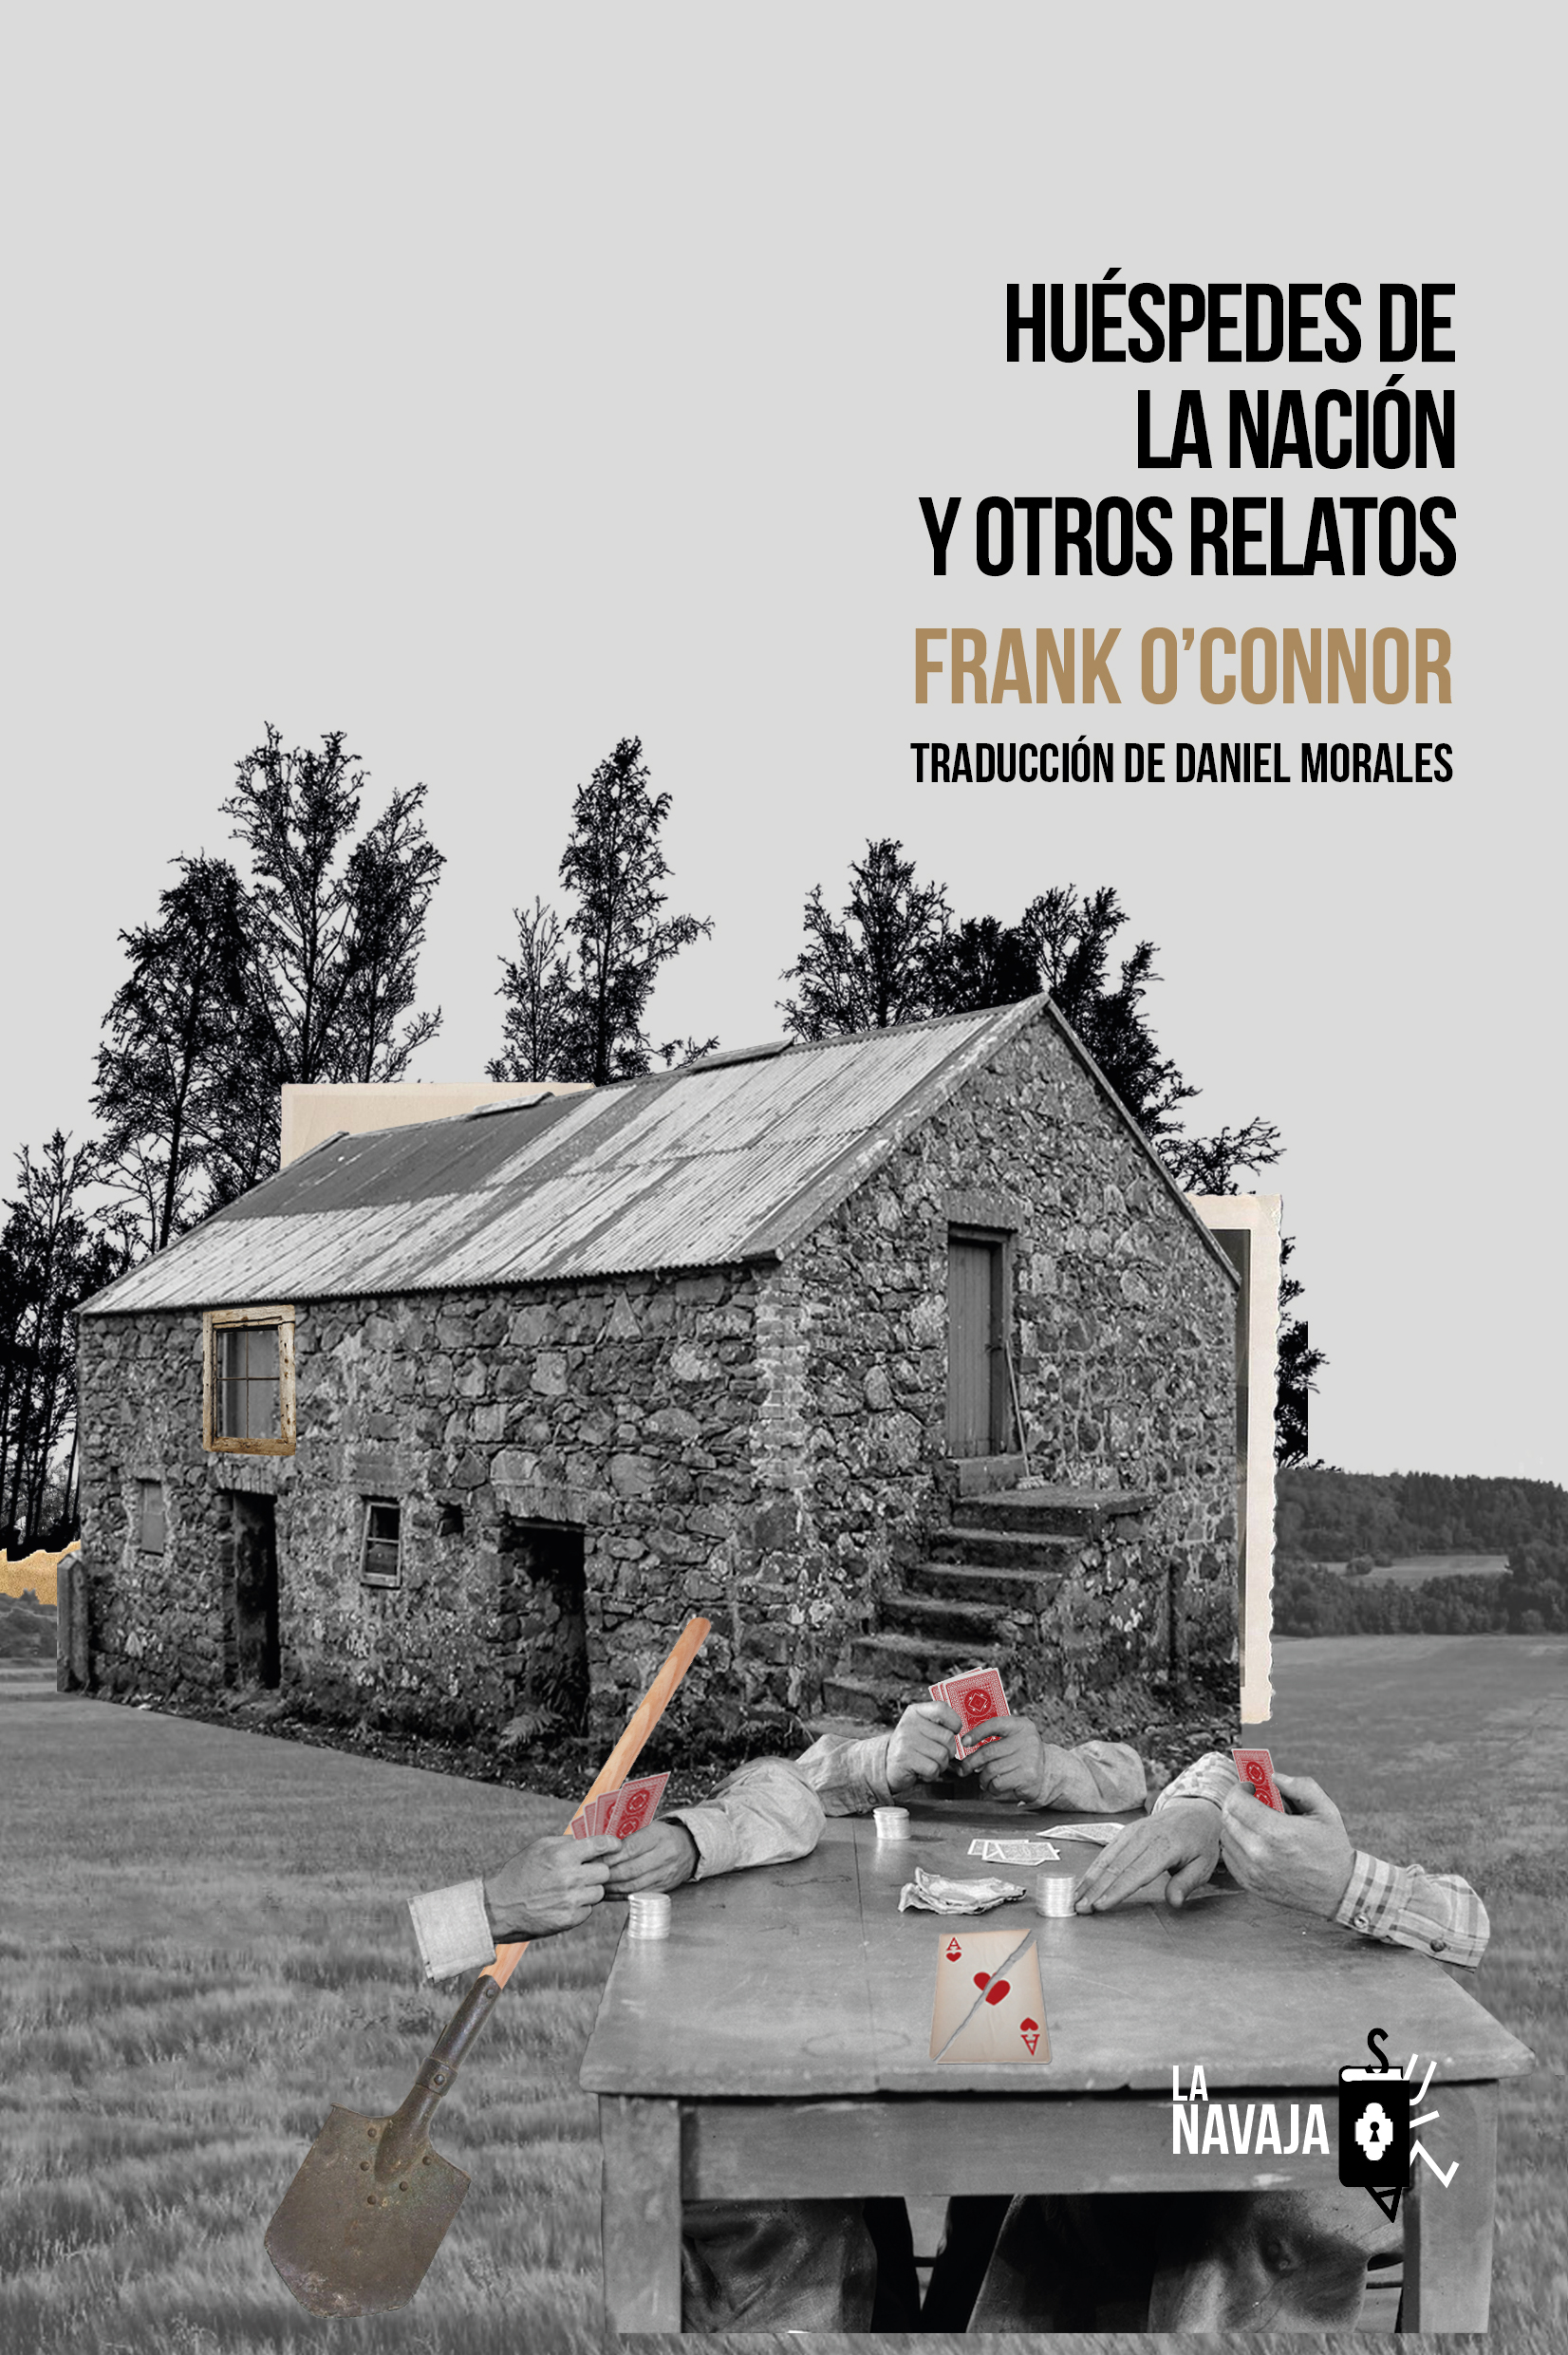 Huéspedes de la nación y otros relatos, de Frank O’Connor